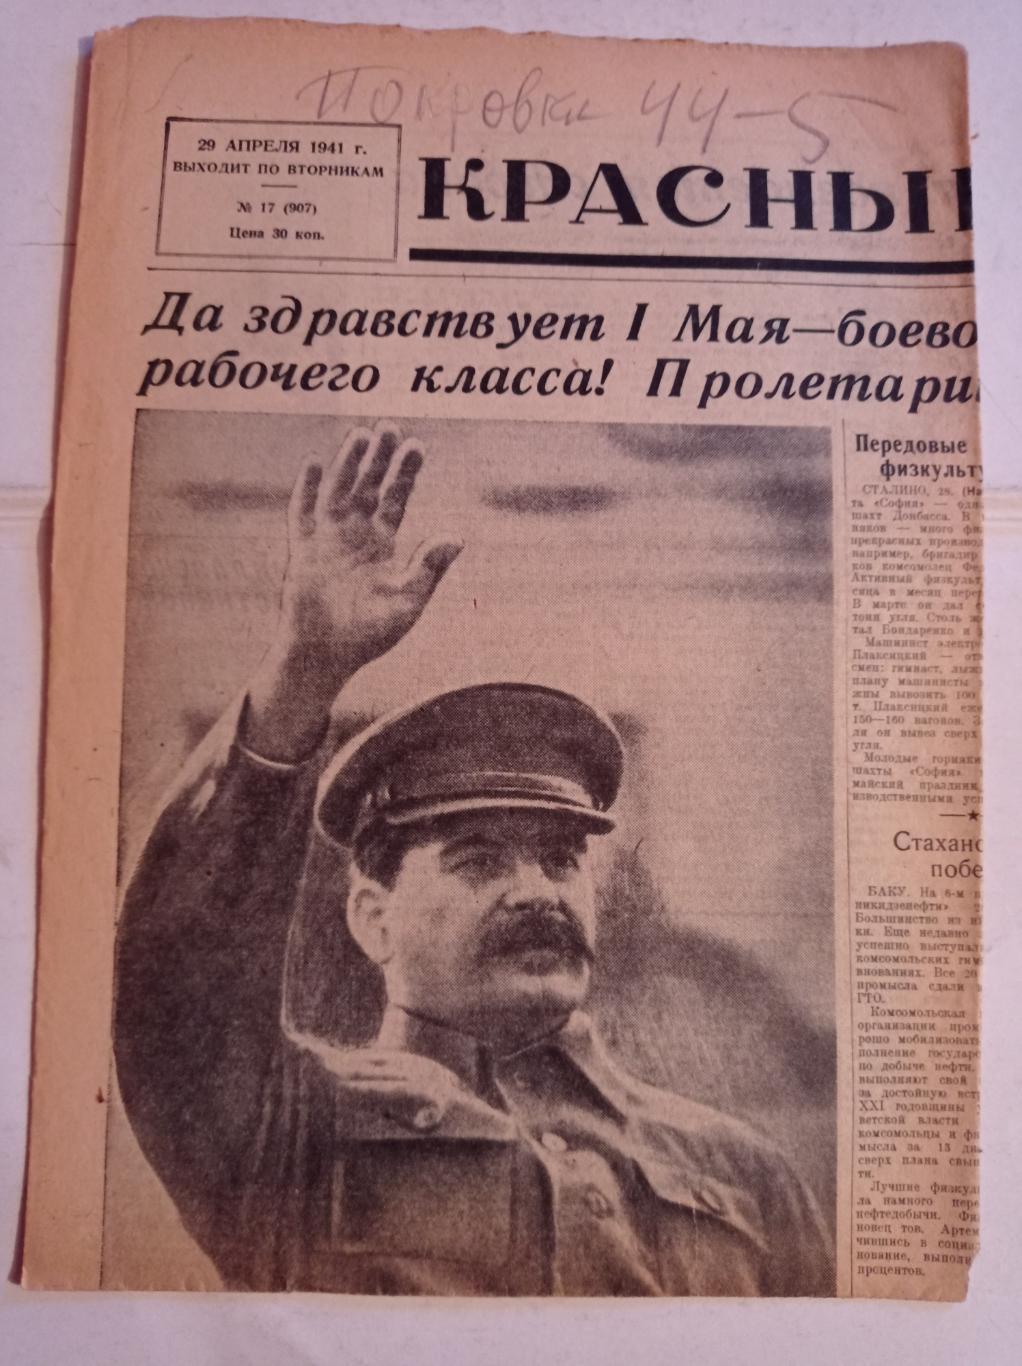 Газета Красный спорт 29.04.1941 №17 (907)